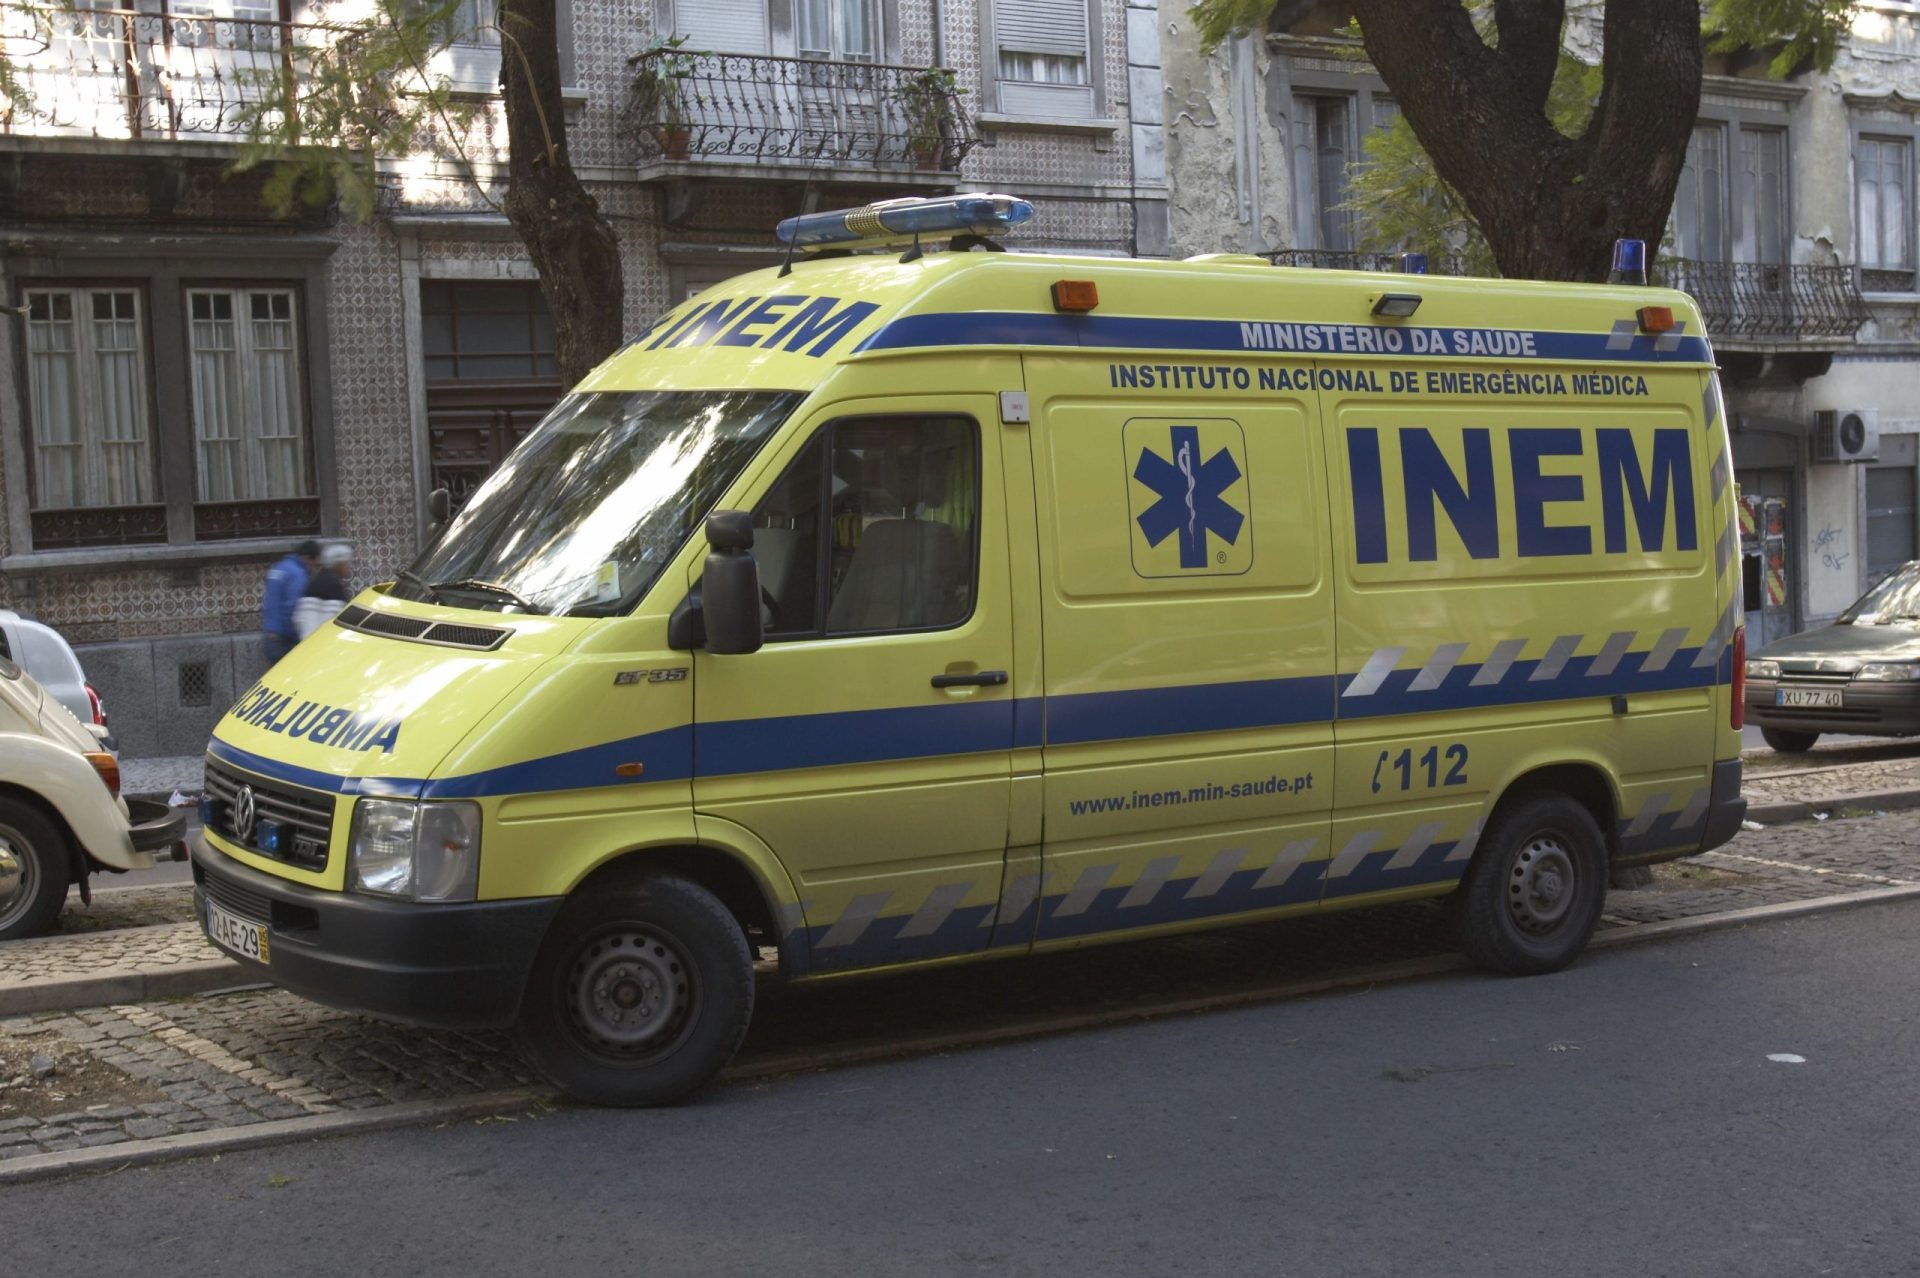 Desfibrilhadores nas ambulâncias salvaram 447 vidas em 2013